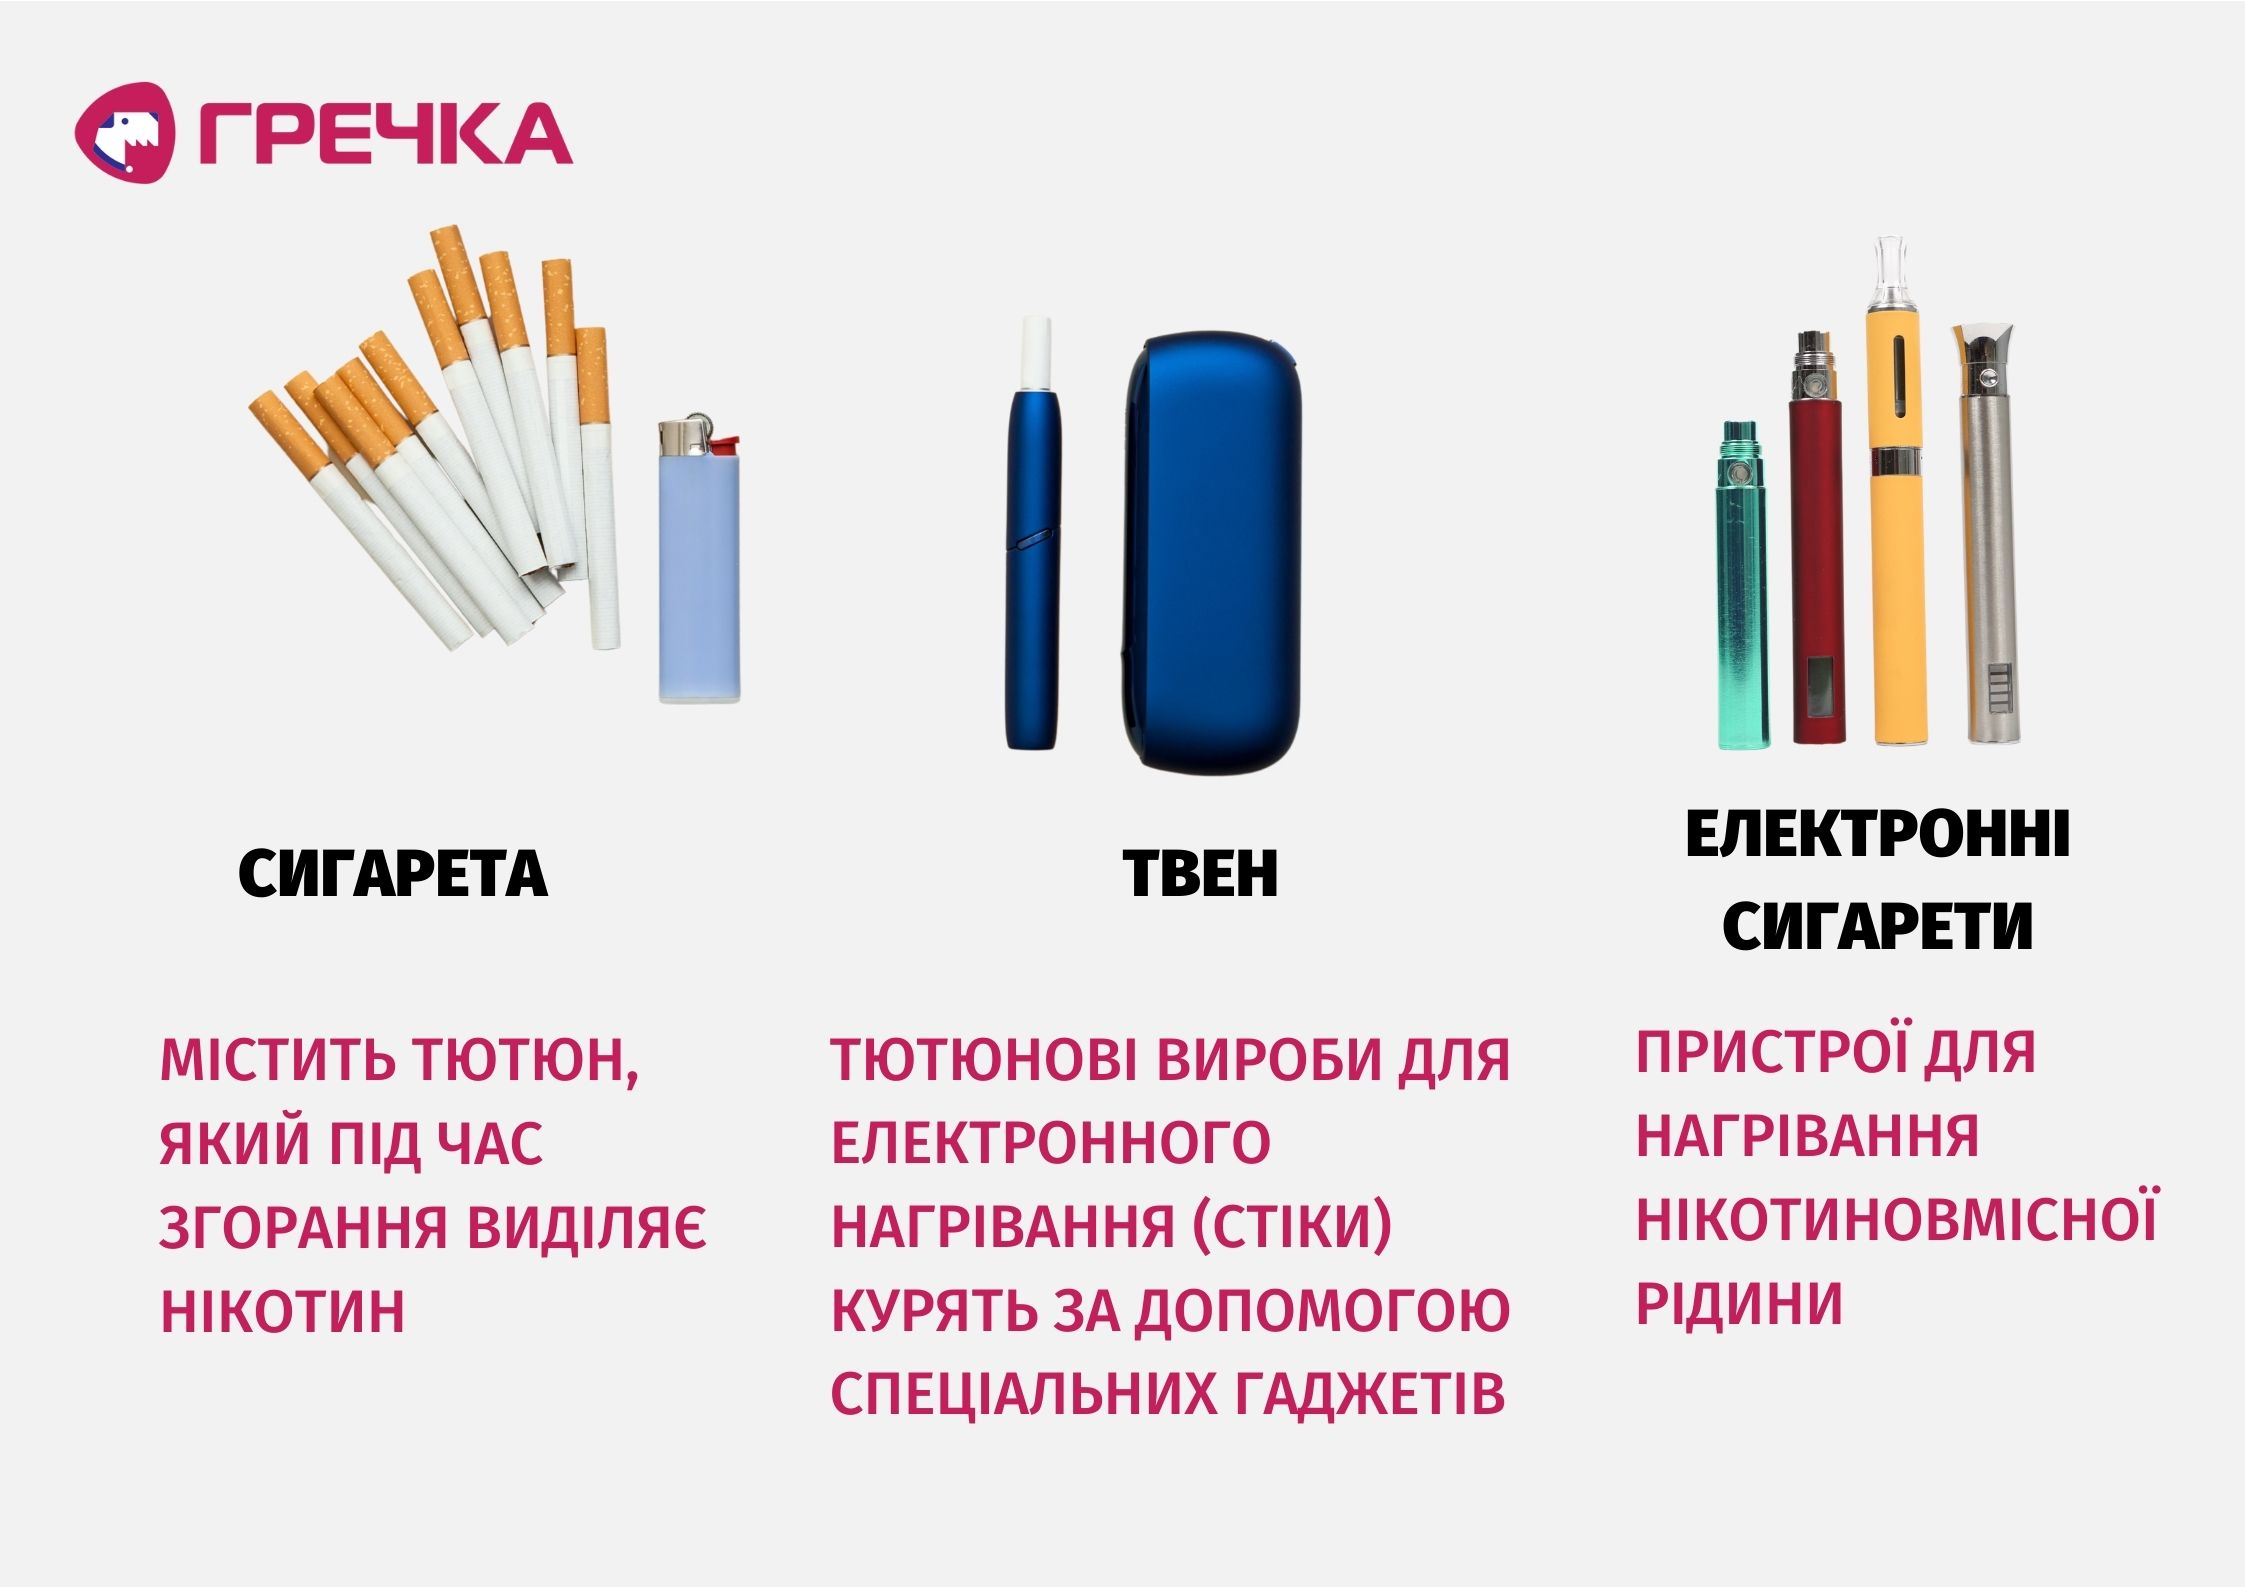 Сигарета, ТВЕН, електронна сигарета: у чому різниця